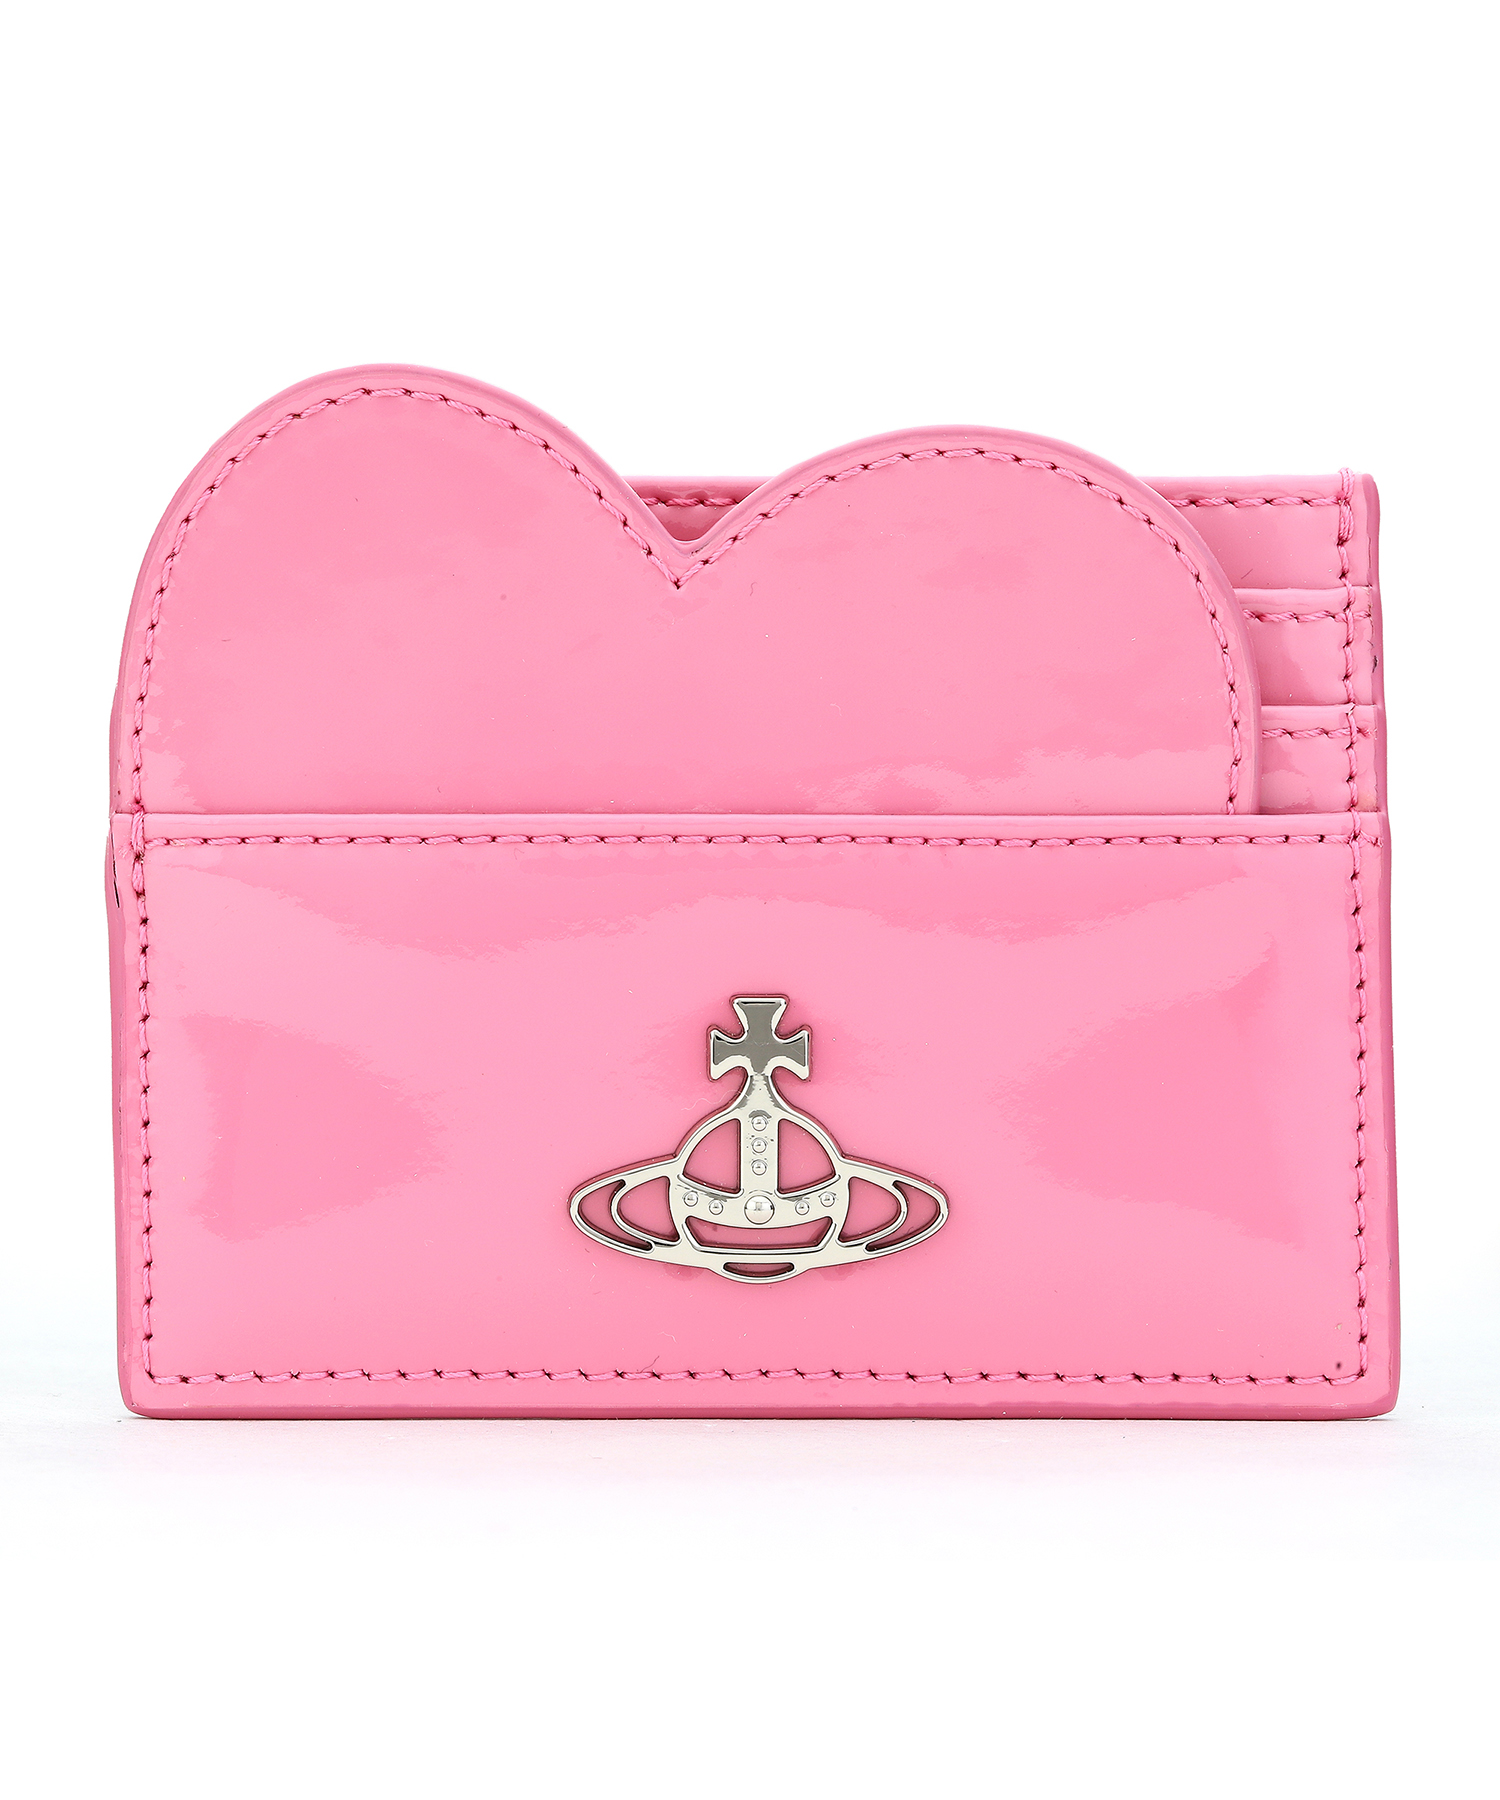 ヴィヴィアン・ウエストウッド(Vivienne Westwood) ピンク 財布 | 通販 ...